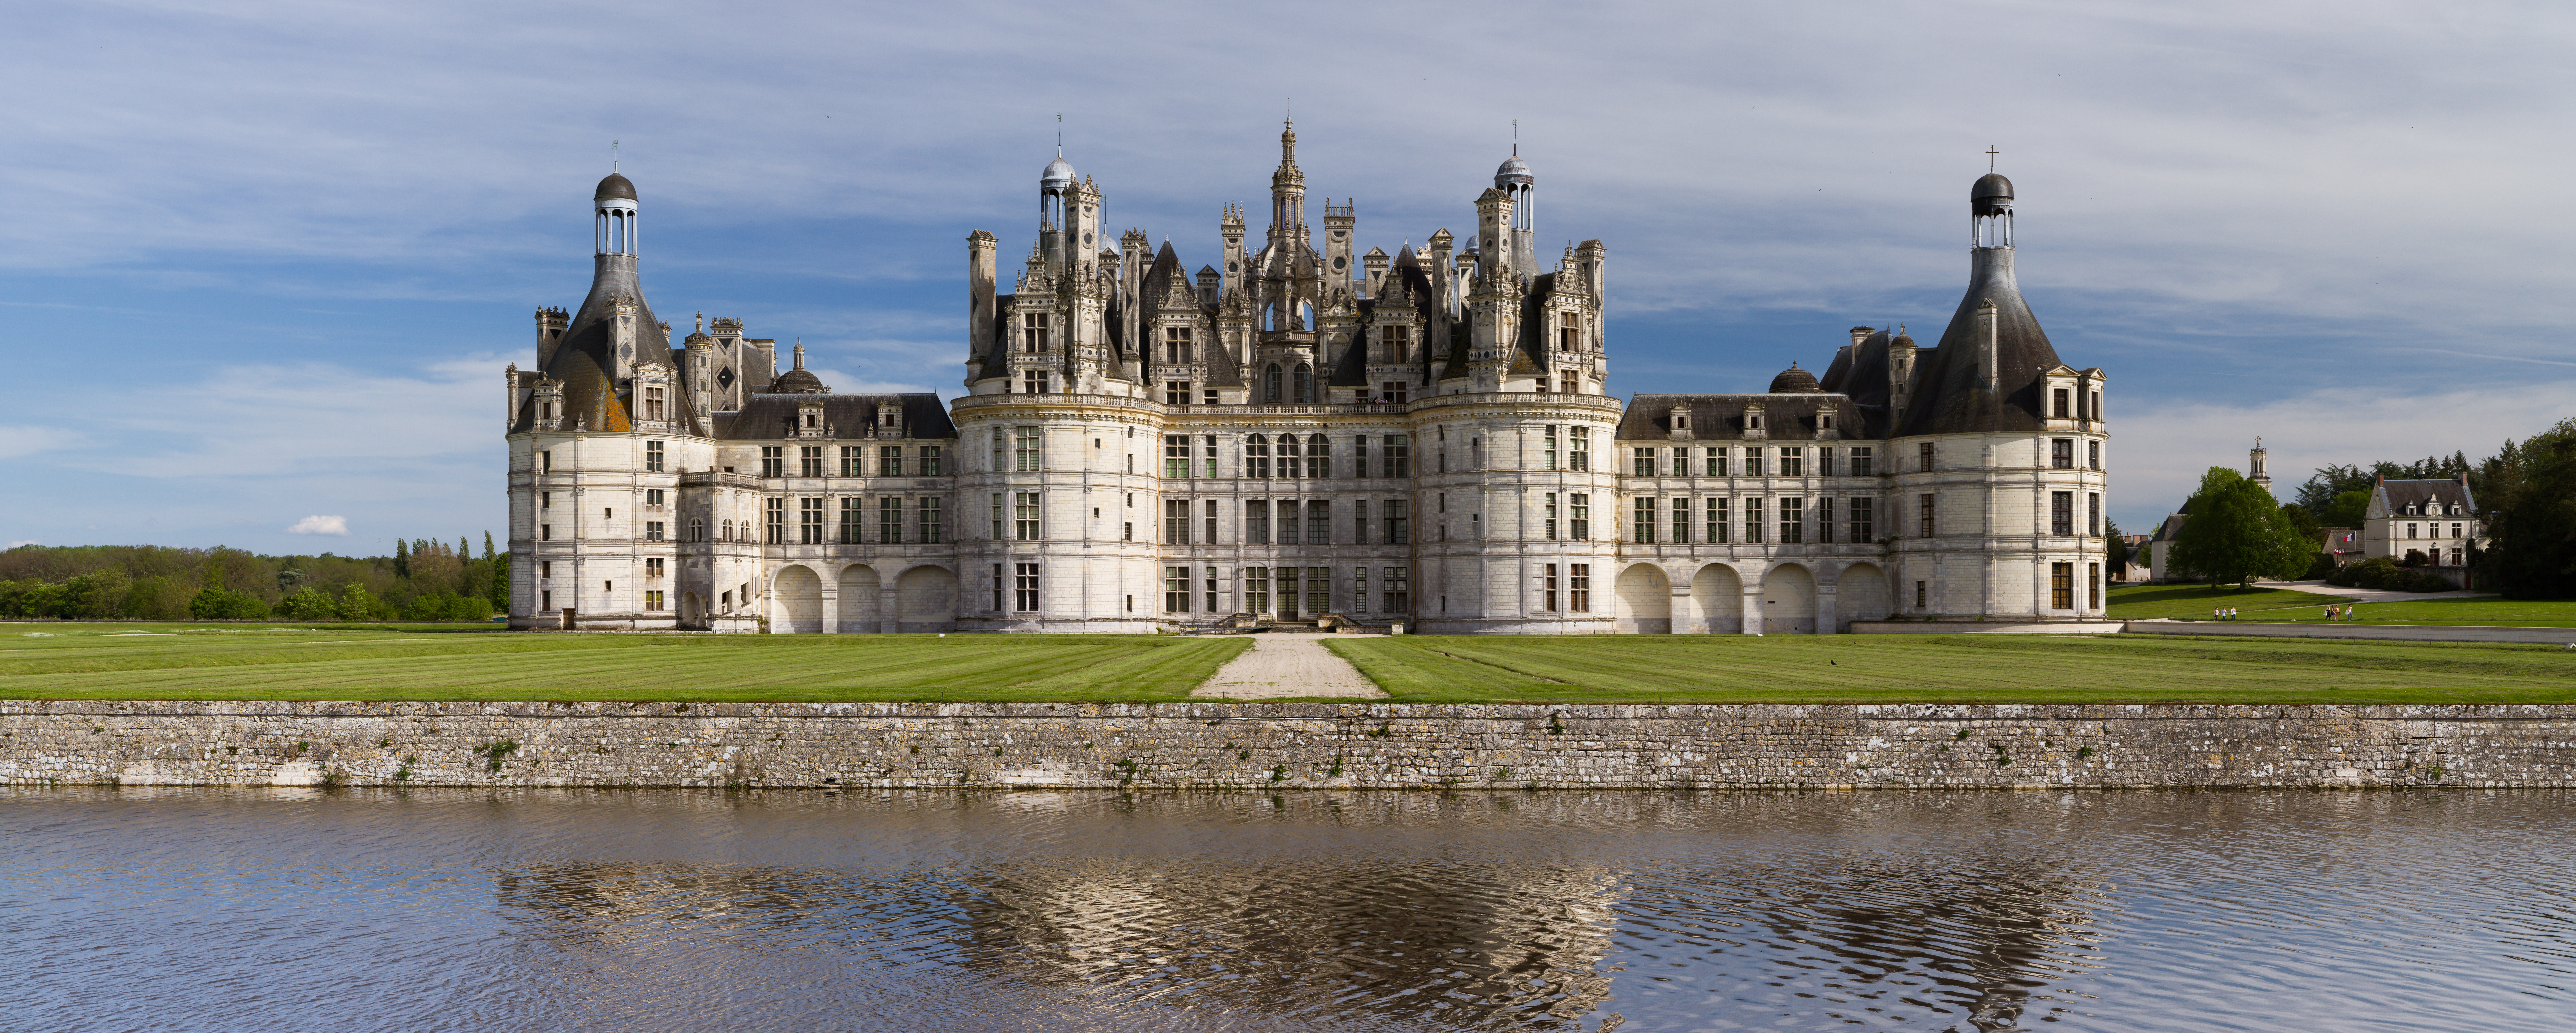 Amazing Château De Chambord Pictures & Backgrounds